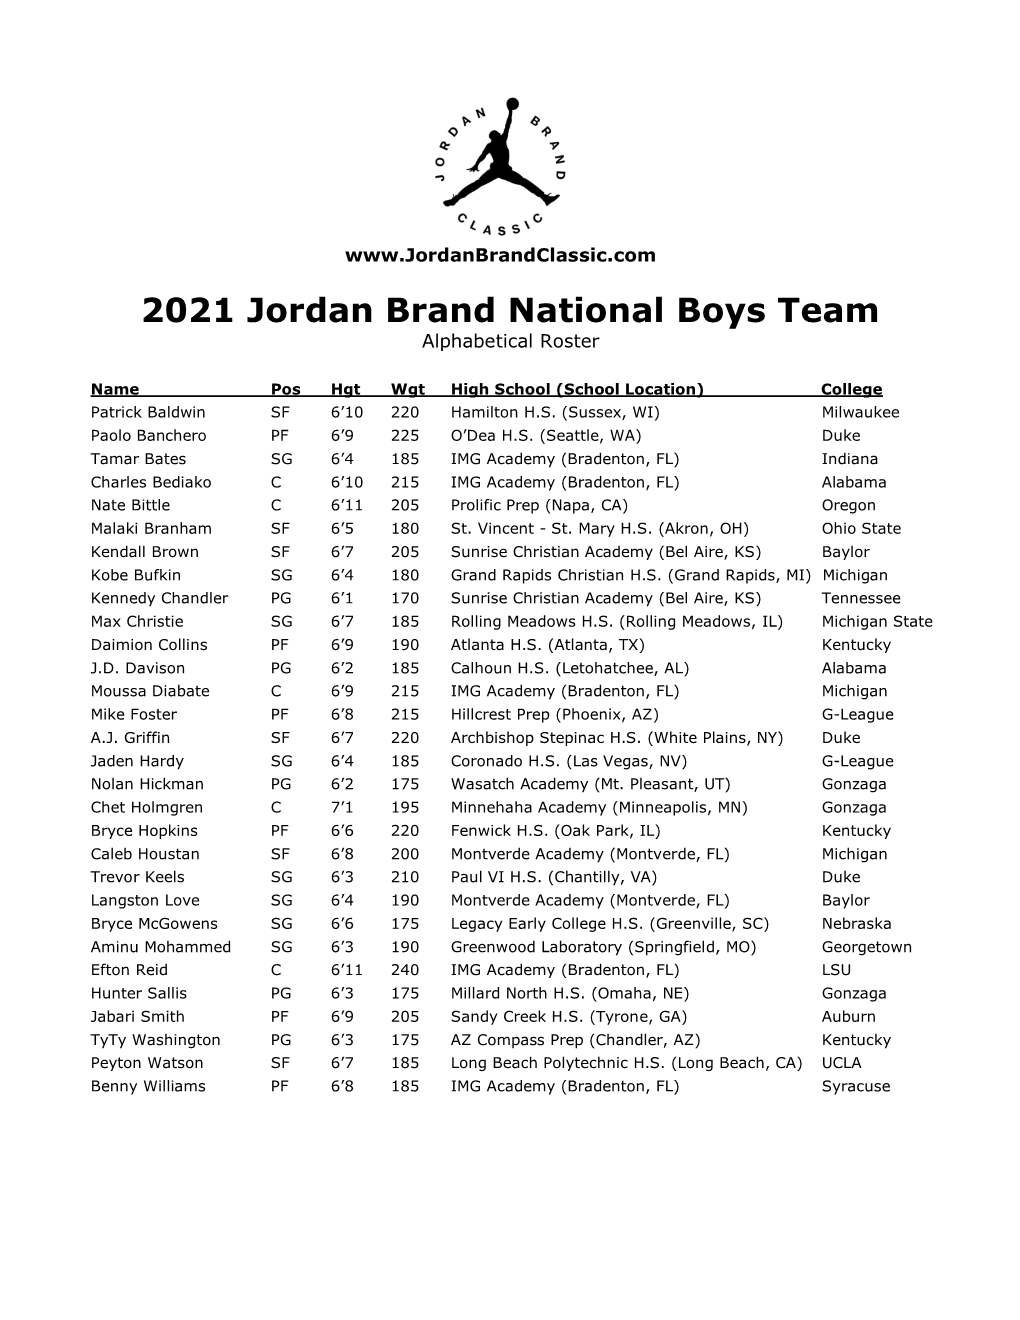 2021 Jordan Brand National Boys Team Alphabetical Roster